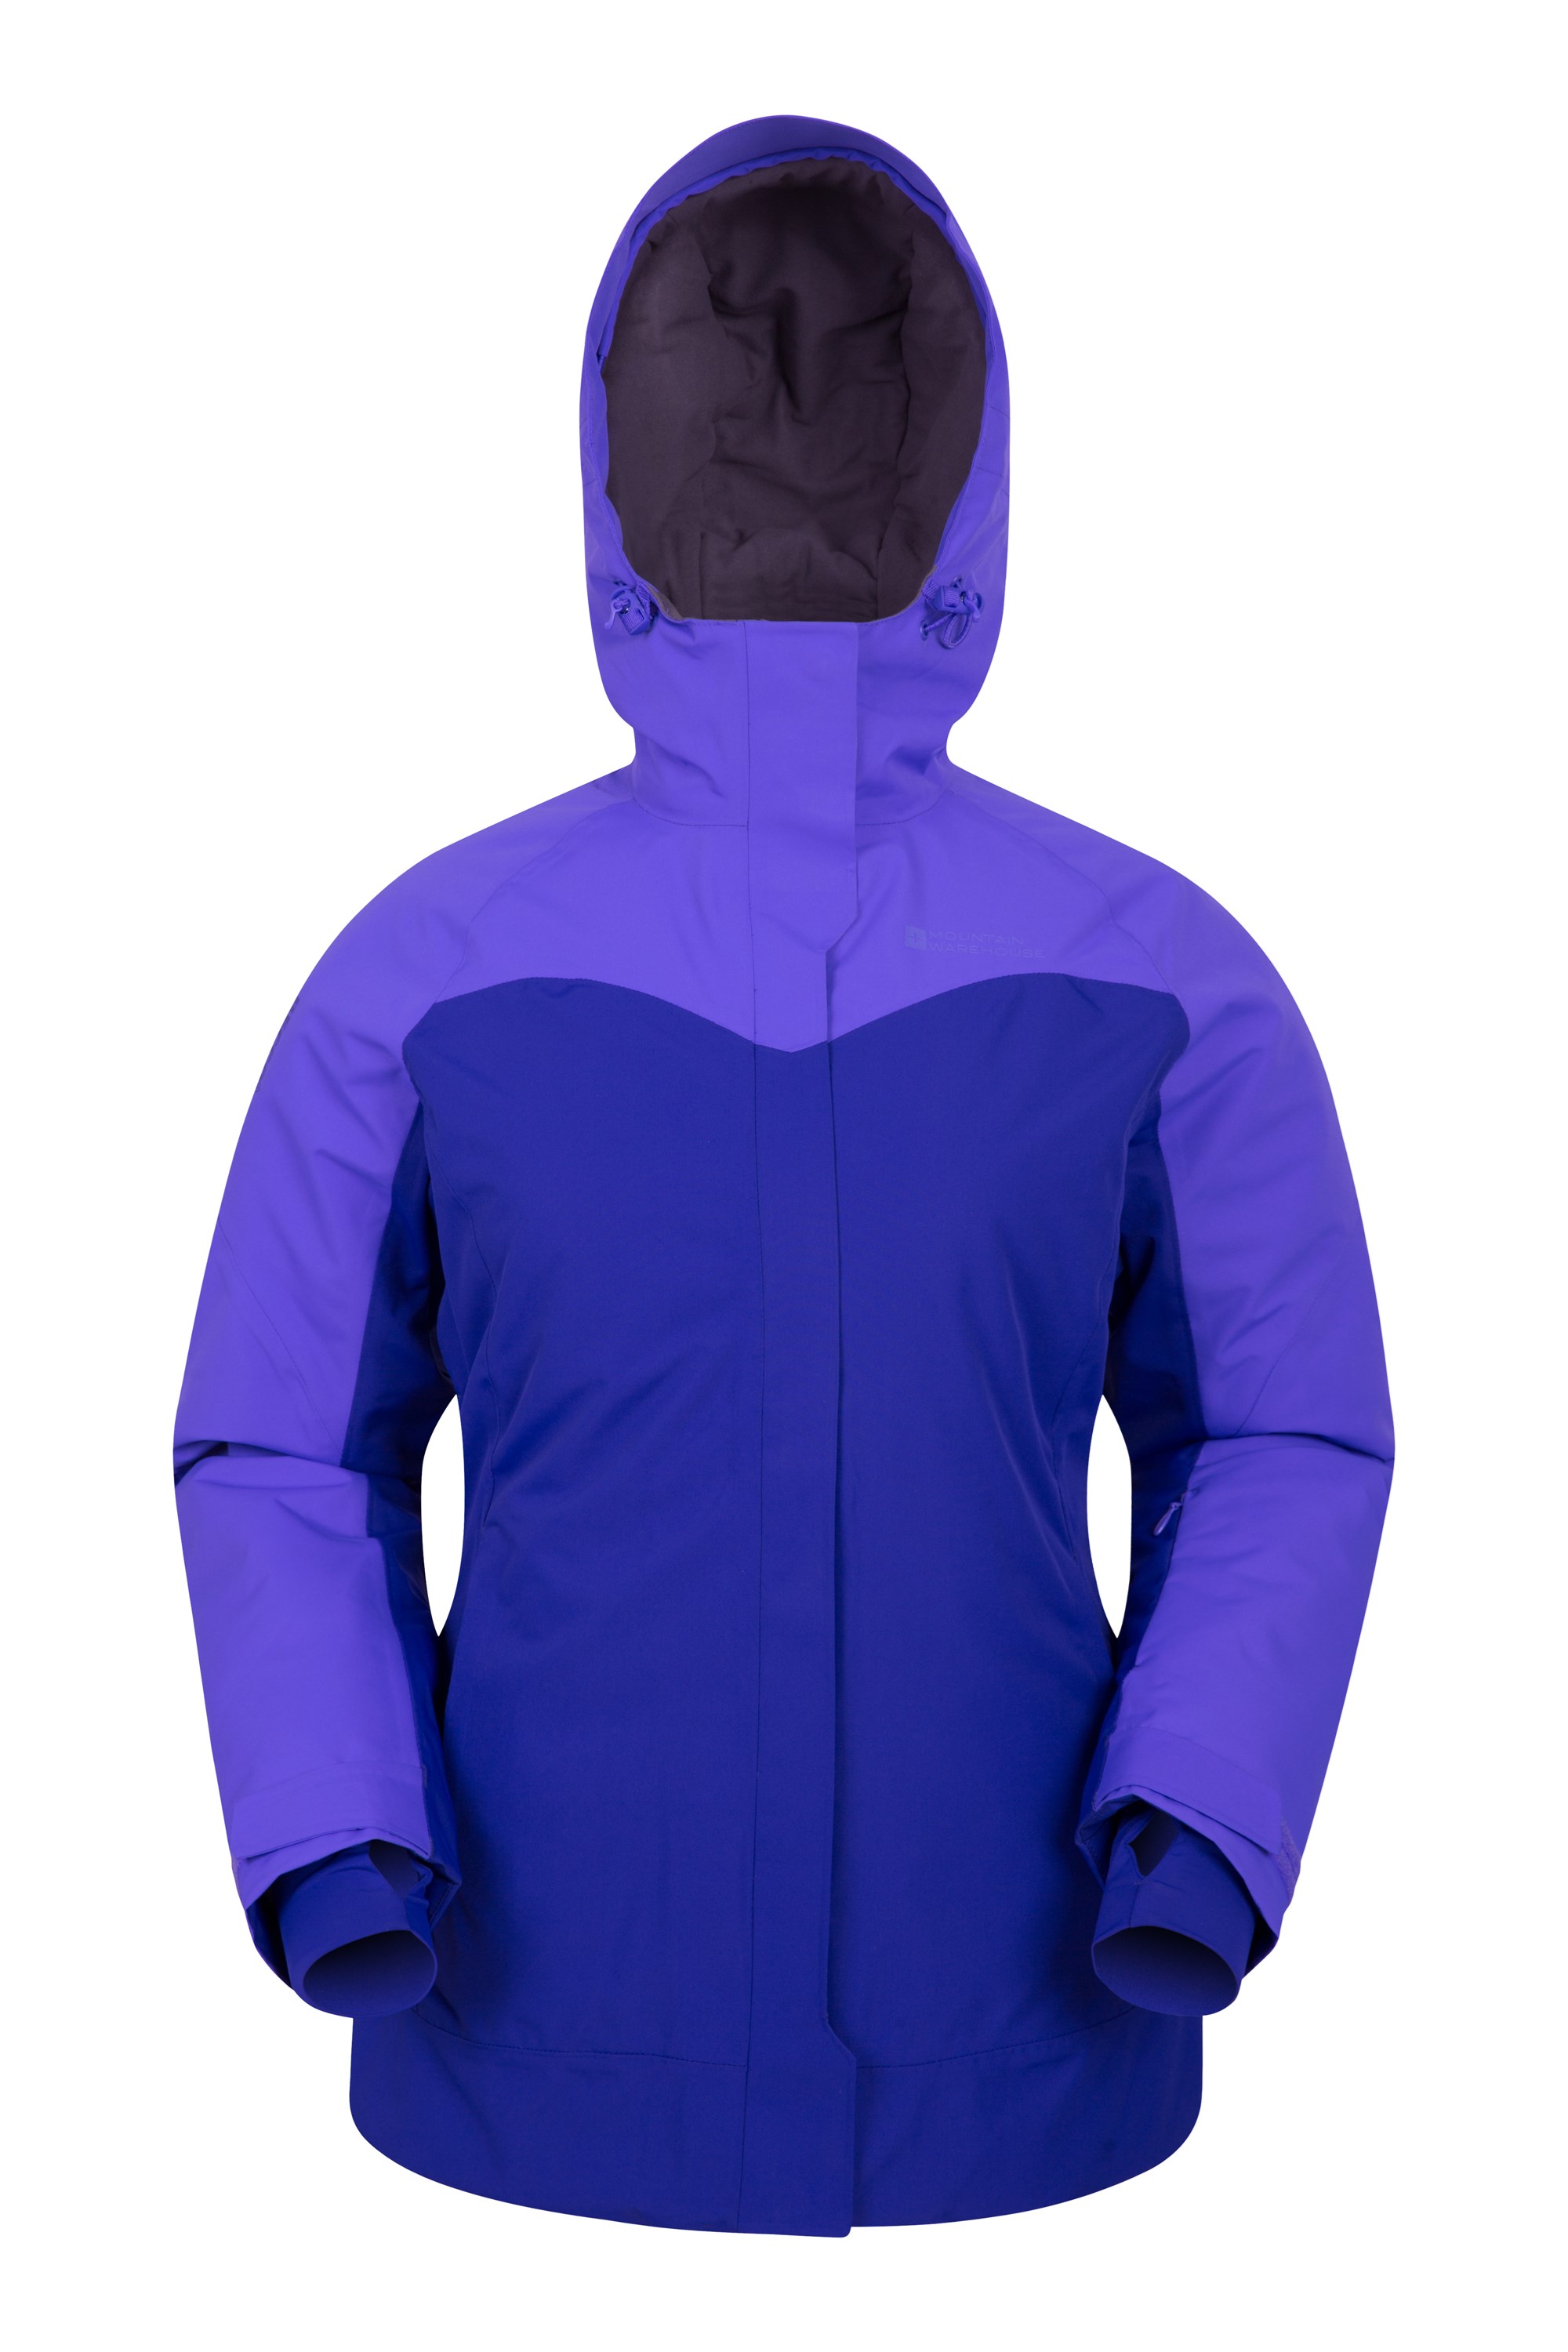 Mountain Warehouse Trailblazer Extreme Womens Ski Jacket Dark Blue